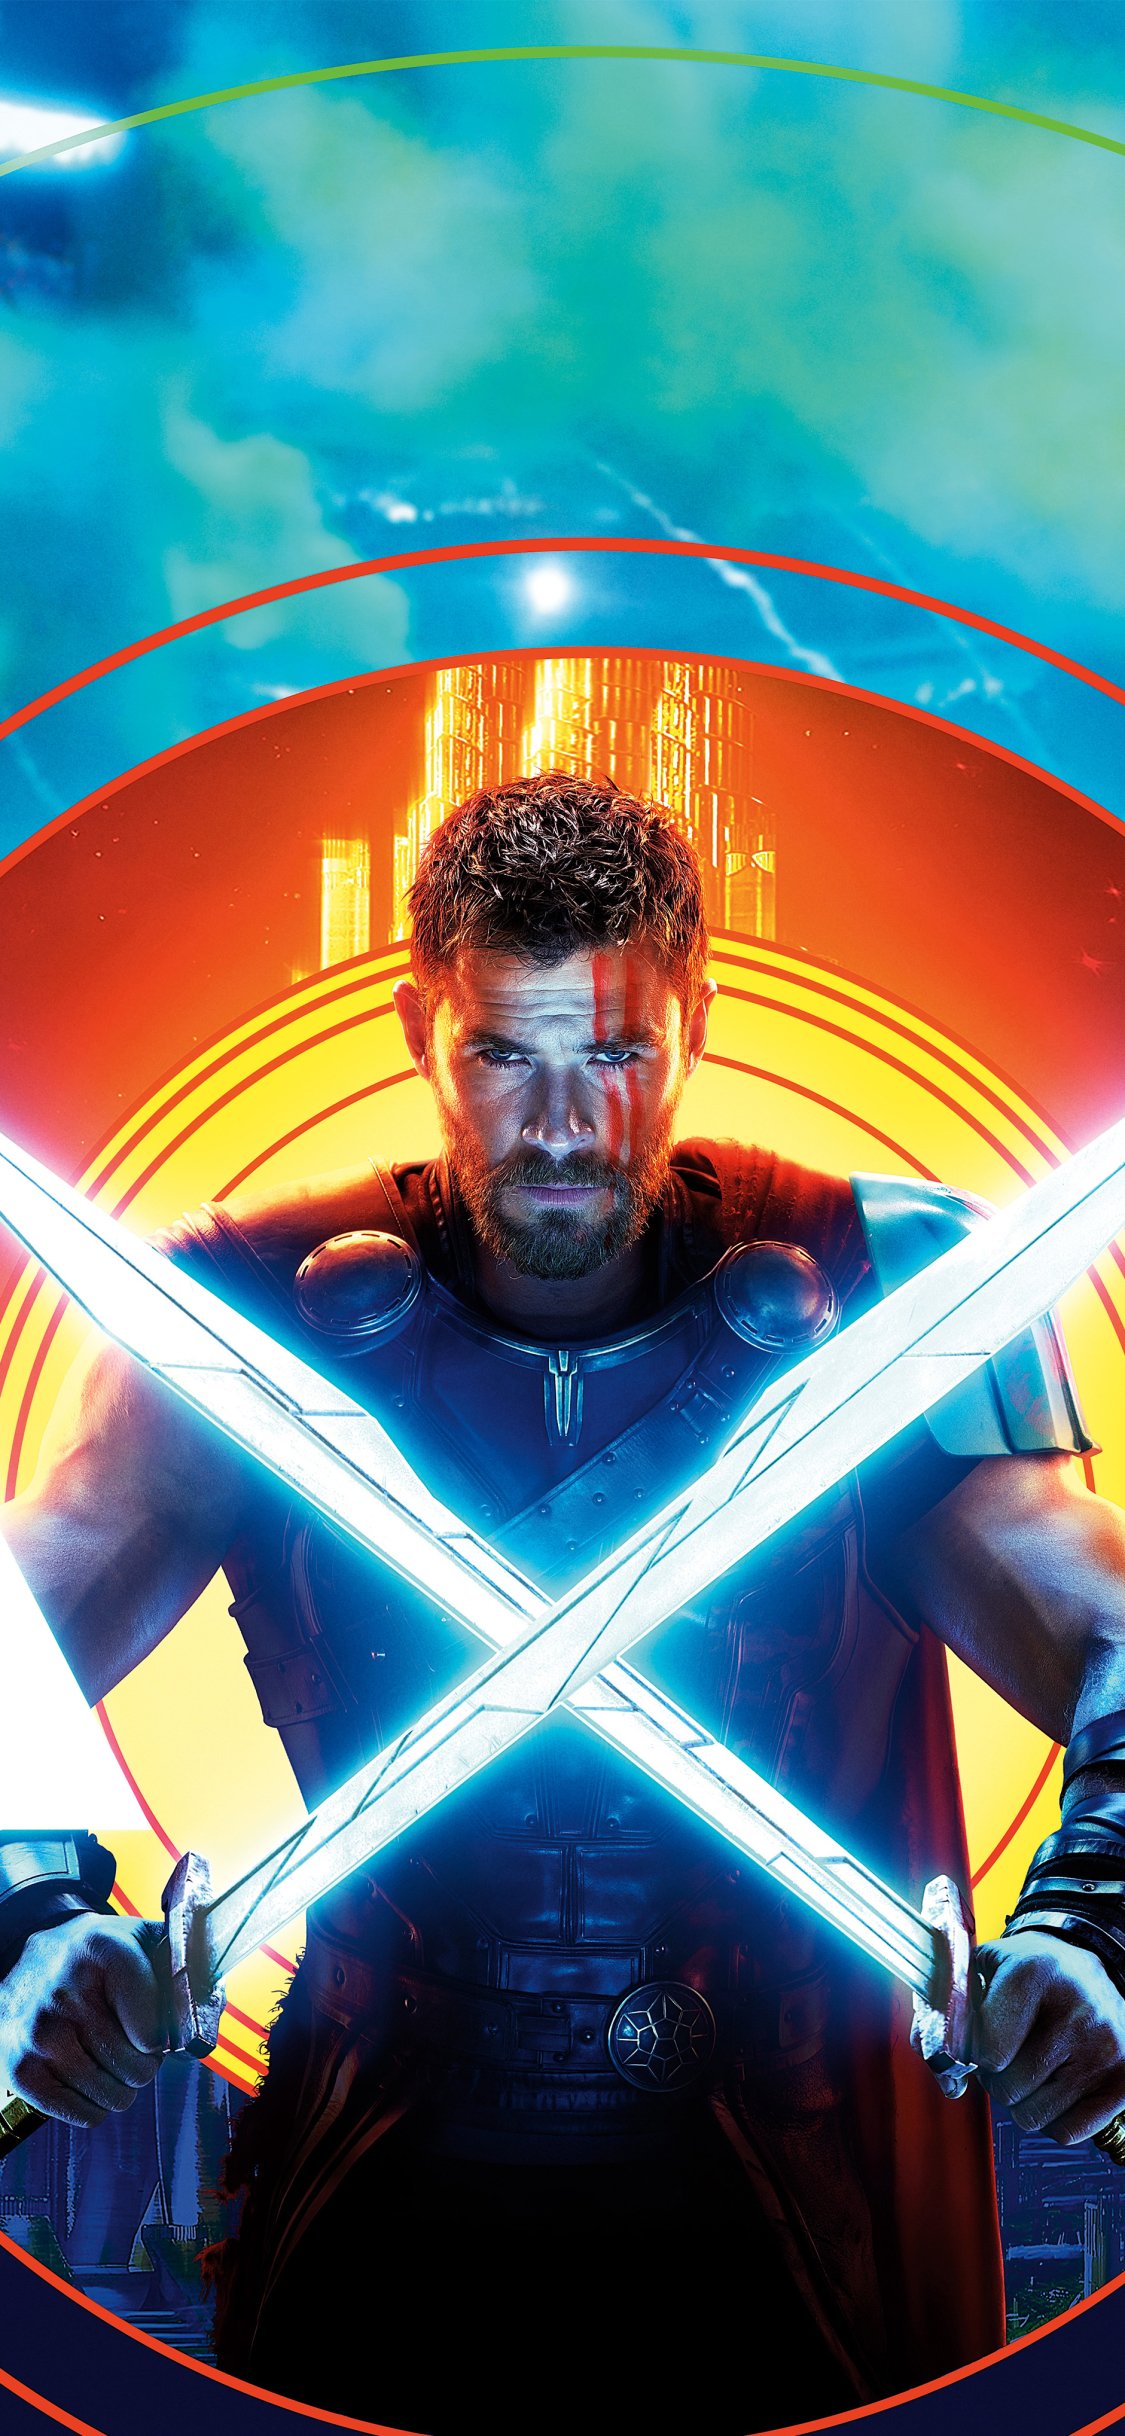 Thor IMAX